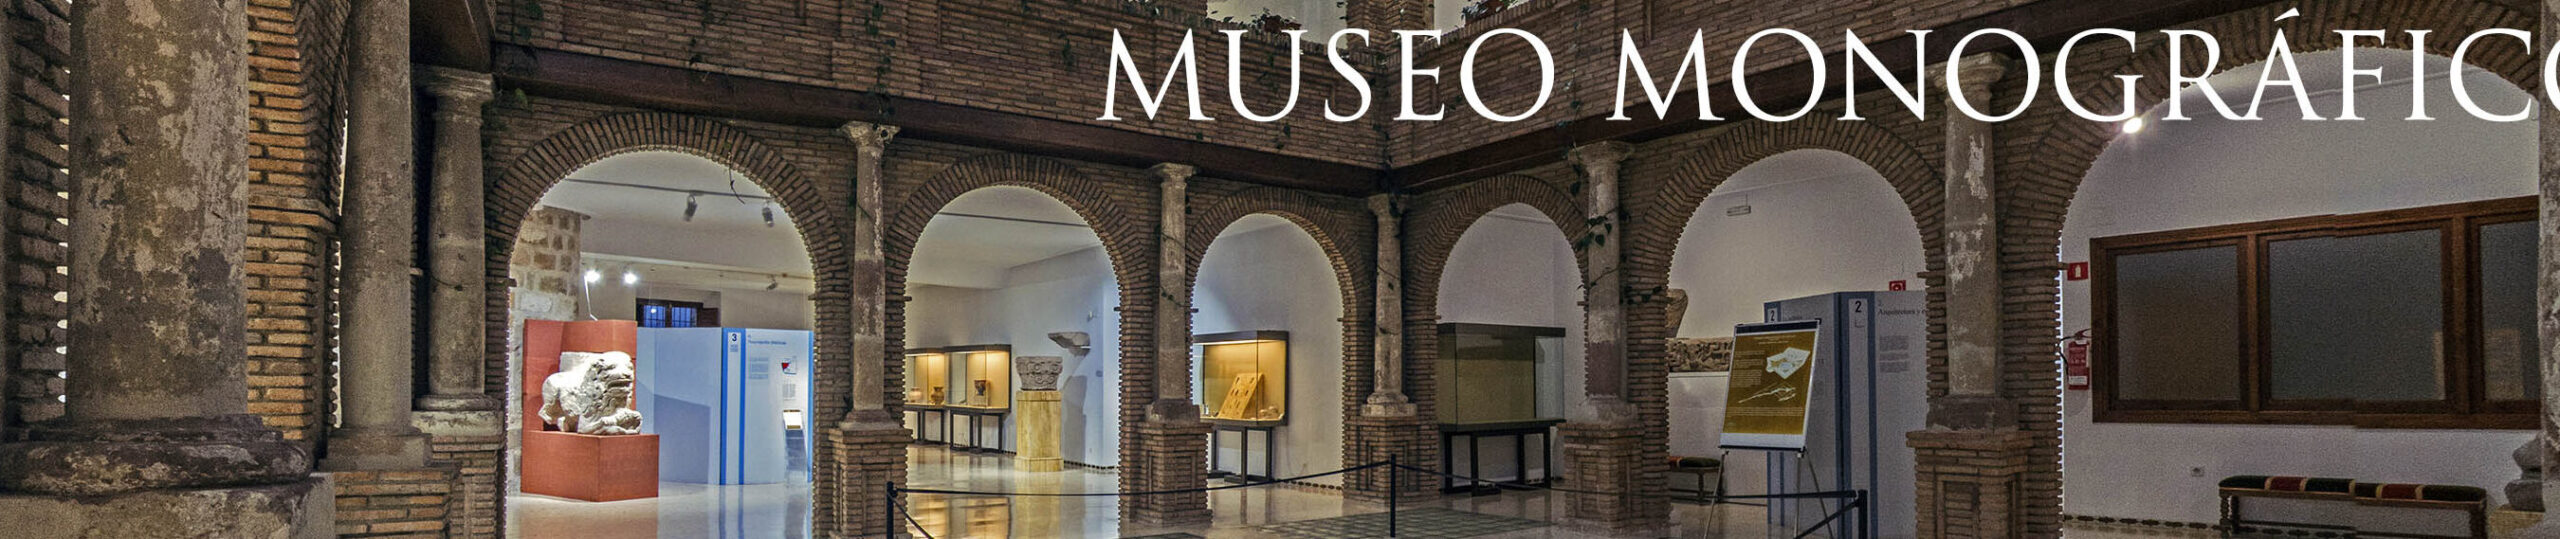 MUSEO ARQUEOLÓGICO DE LINARES. MONOGRÁFICO DE CÁSTULO		Linares	Jaén